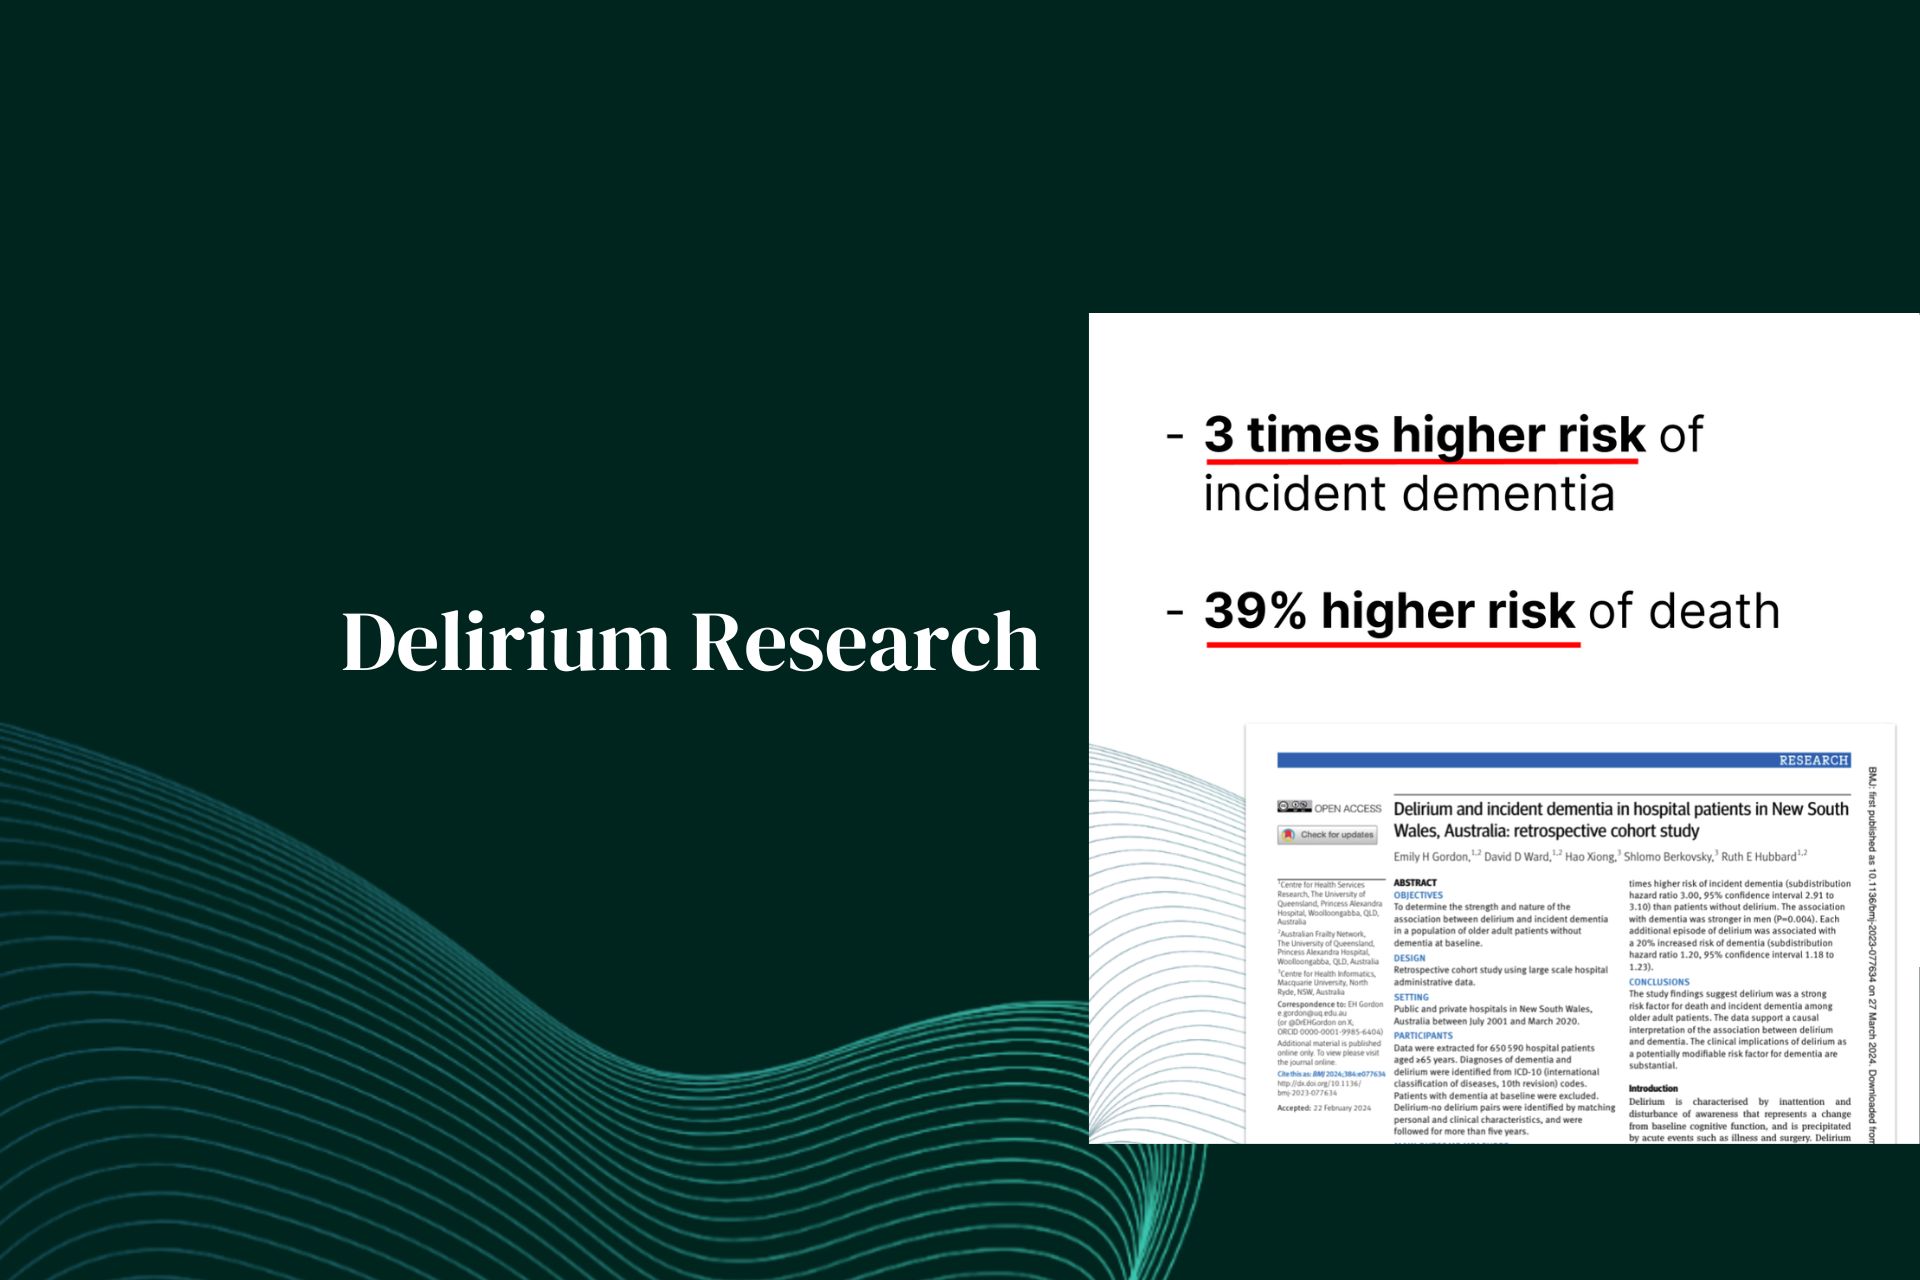 Sterke associatie tussen delirium en incidentie van dementie bij oudere volwassenen zonder dementie bij aanvang